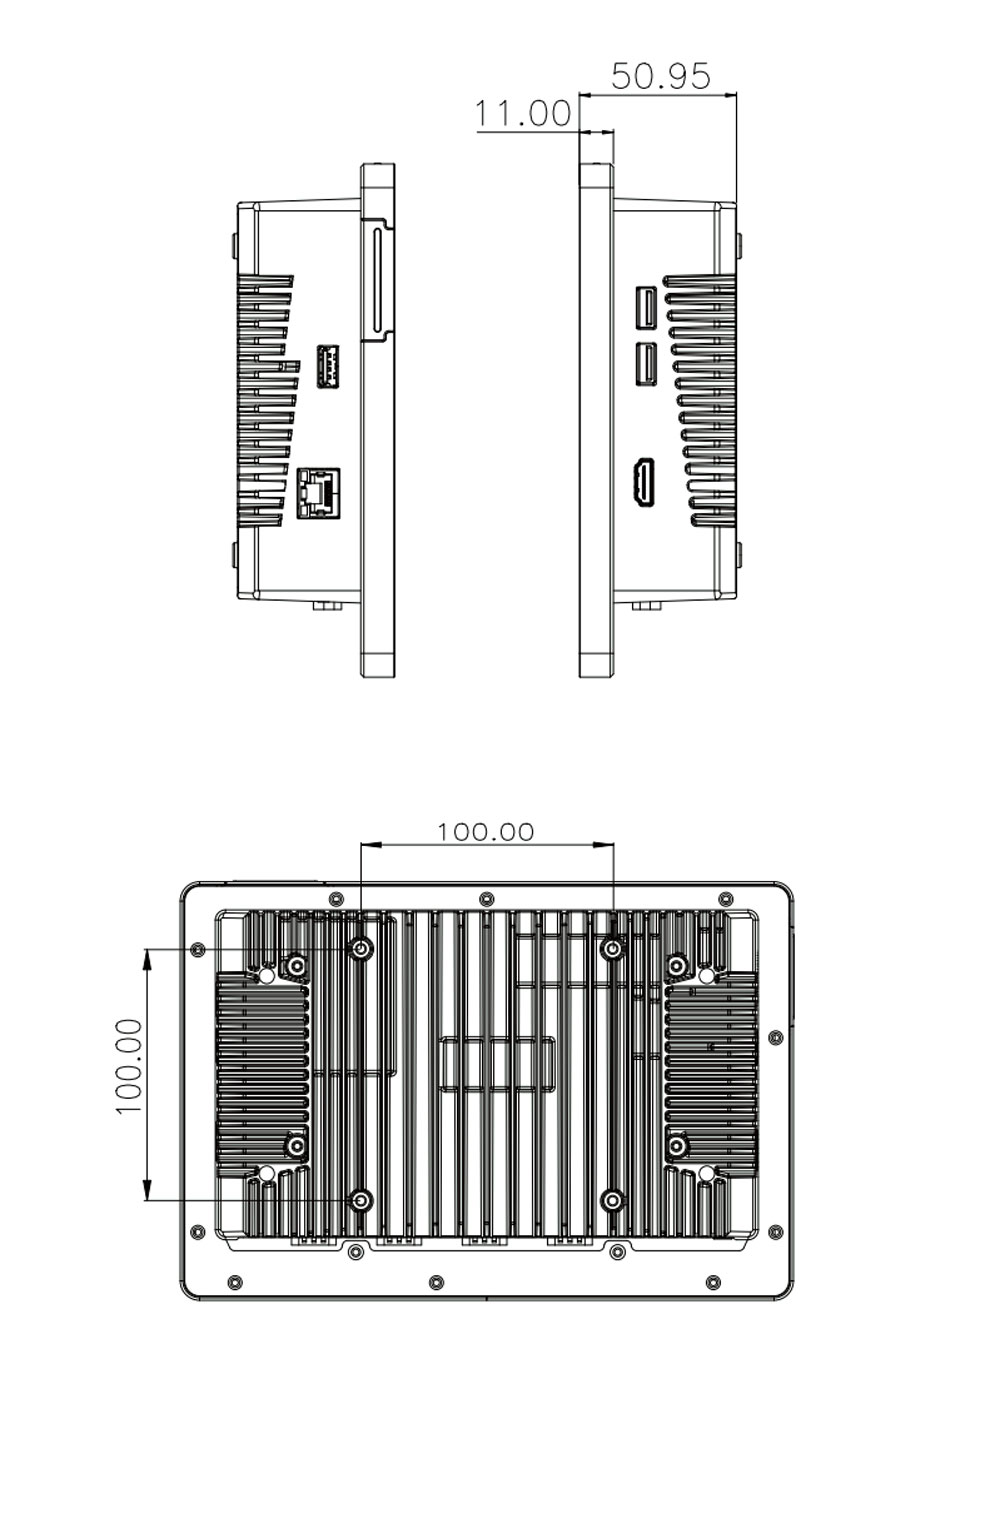 AFL4-W101-ADLP-i3/8G-R10 Panel PC Maße